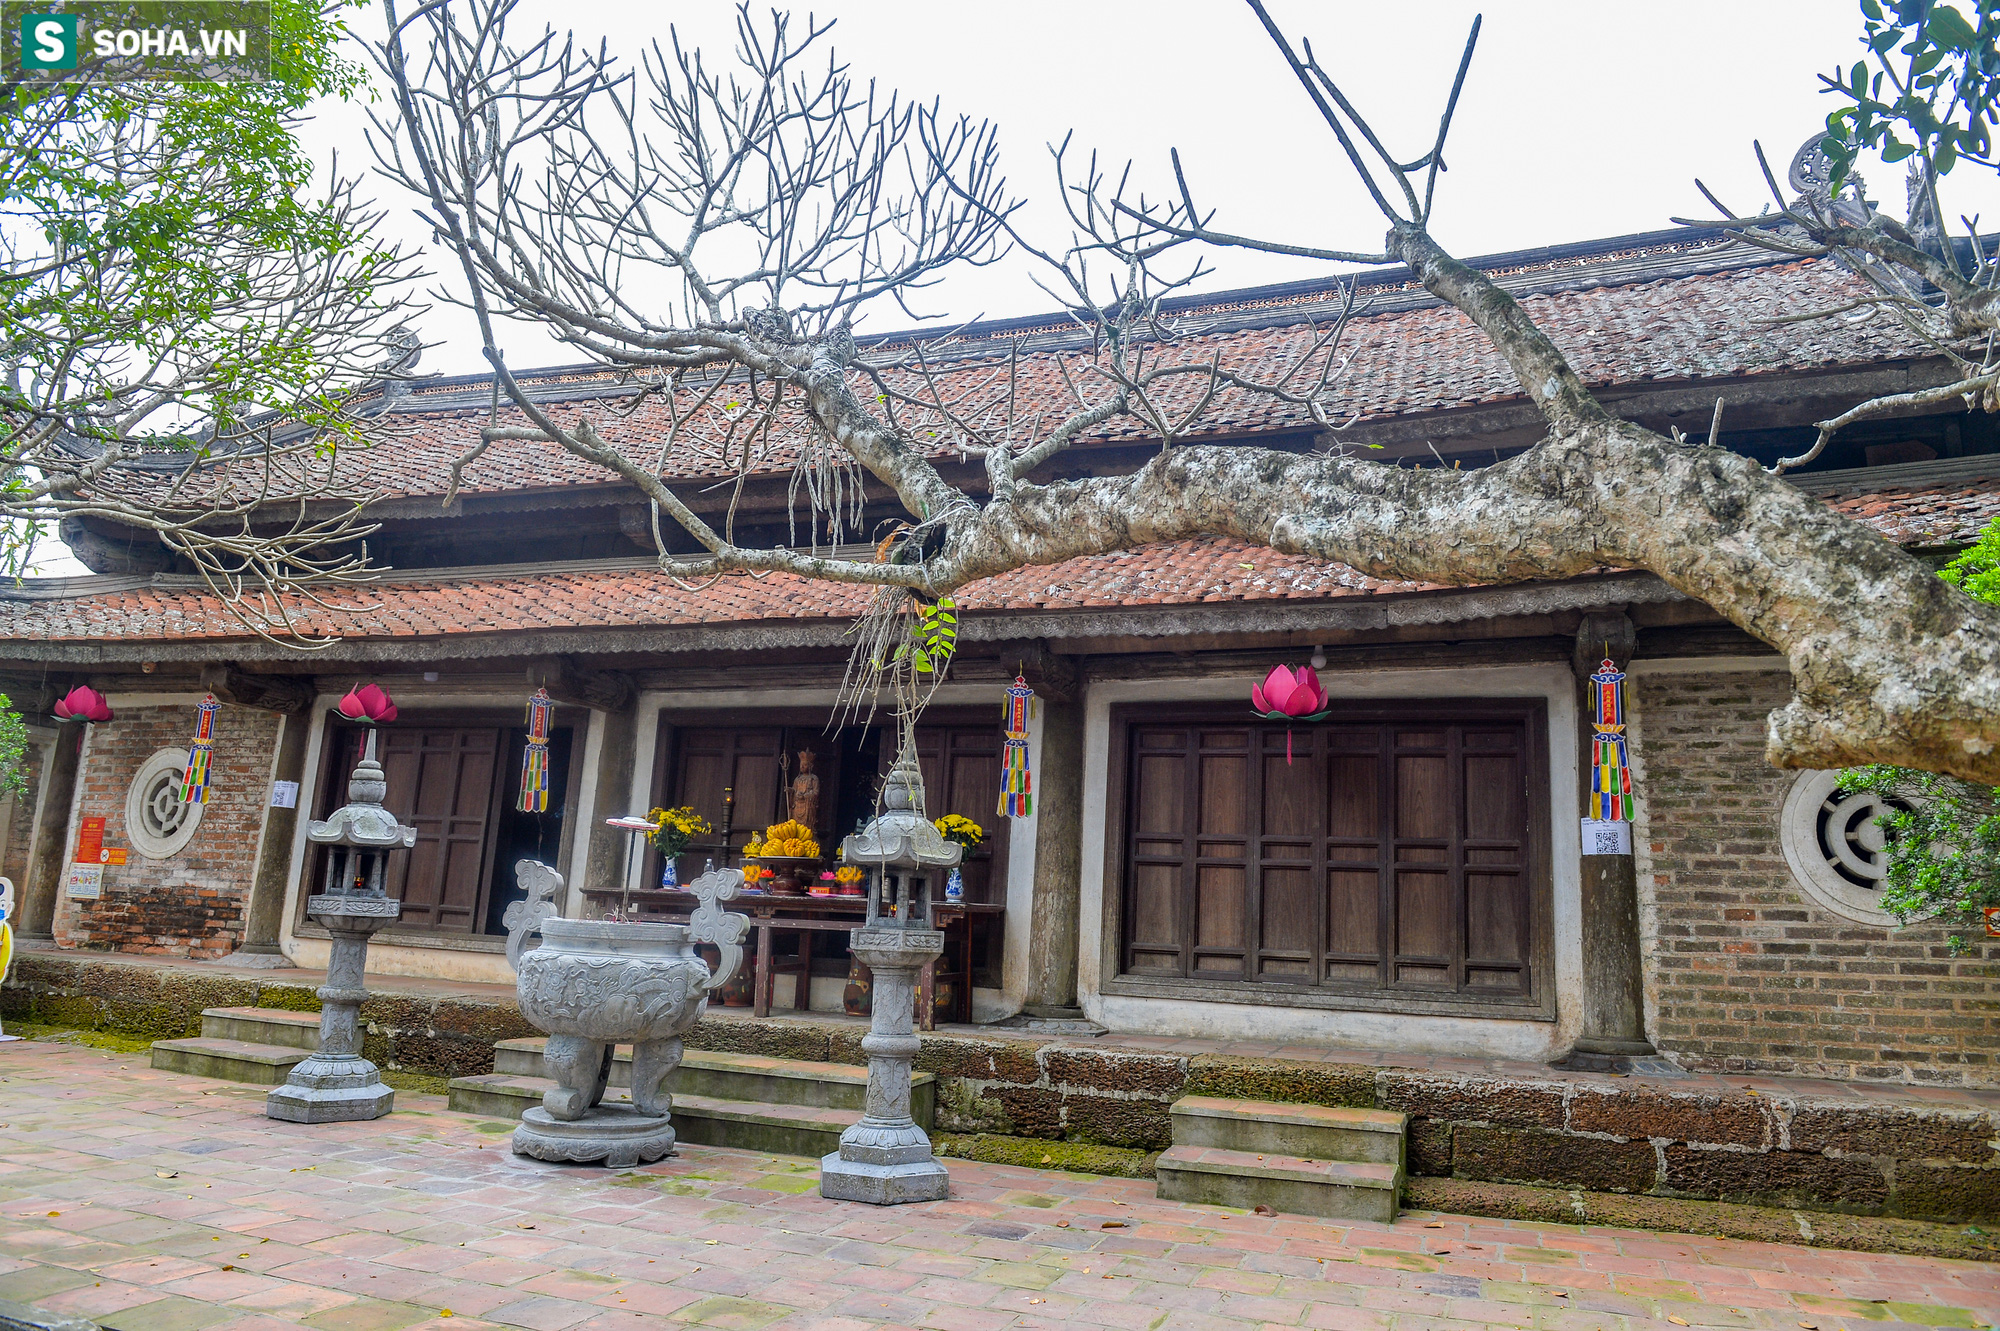  Các vị La Hán chùa Tây Phương đang xuống cấp nghiêm trọng, bong tróc hết lớp sơn son - Ảnh 3.